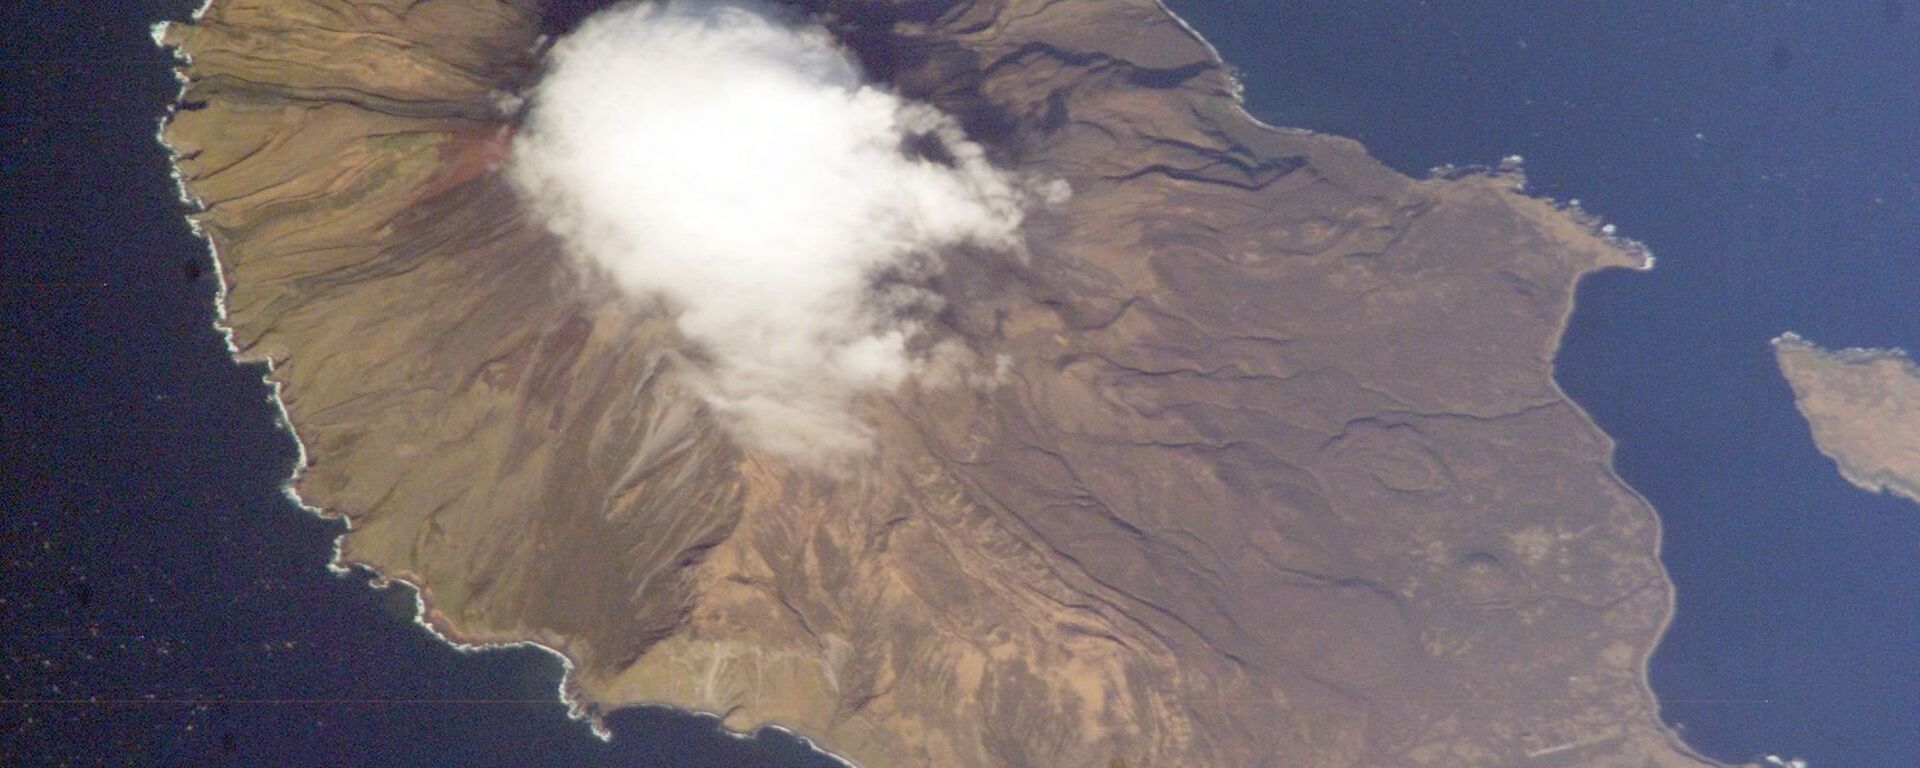 Isla Matua, archipiélago de las Kuriles - Sputnik Mundo, 1920, 27.10.2017